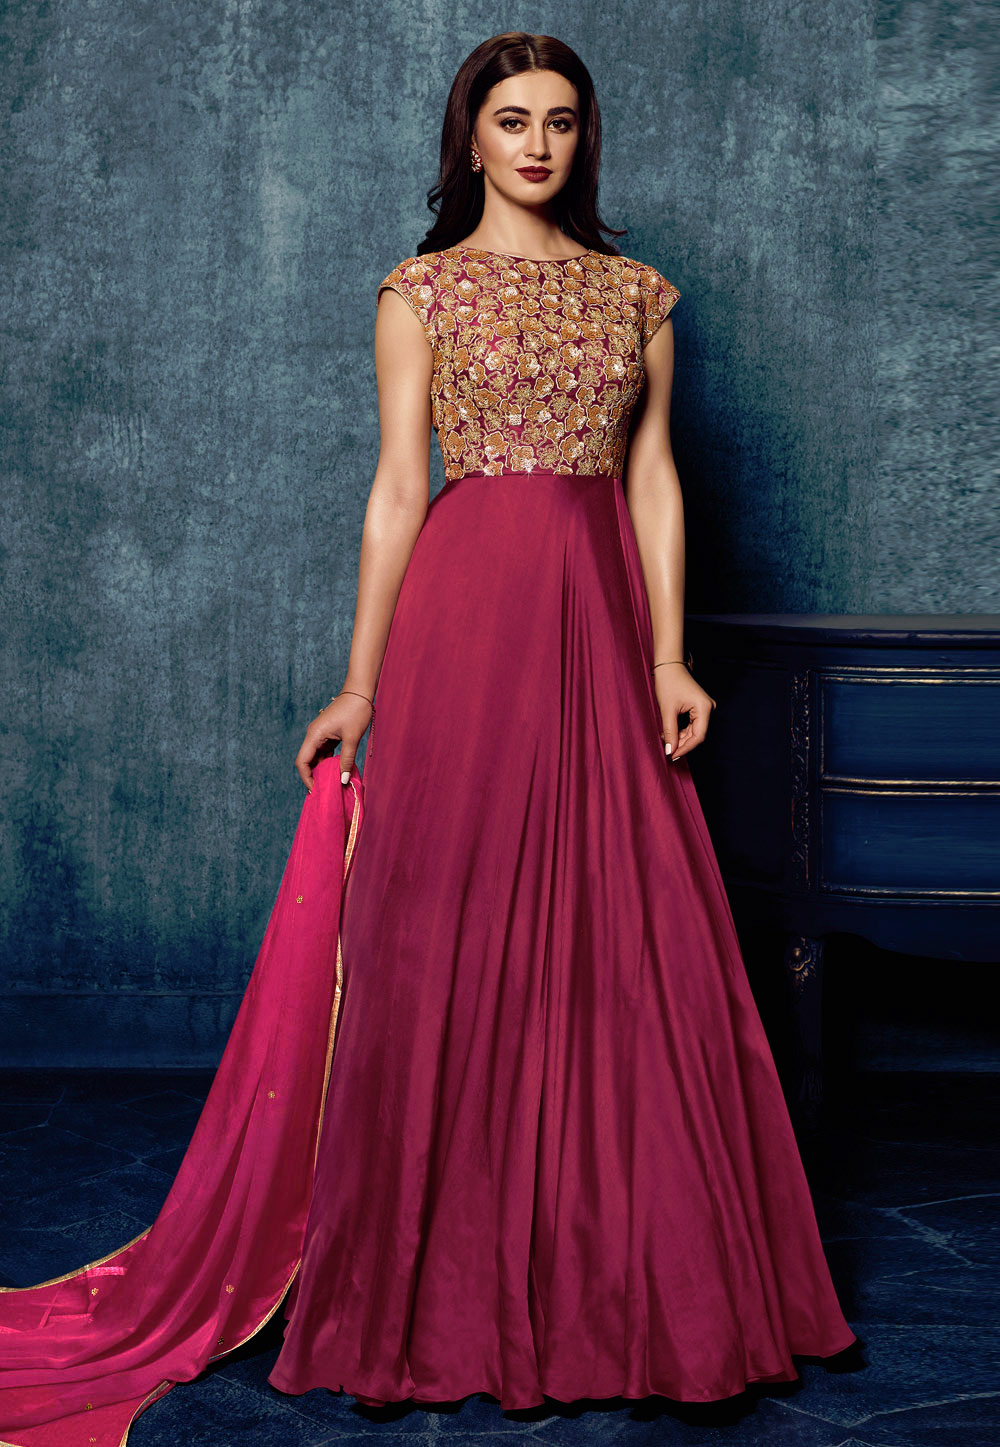 Atraenta Dresses - Buy Atraenta Dresses online in India